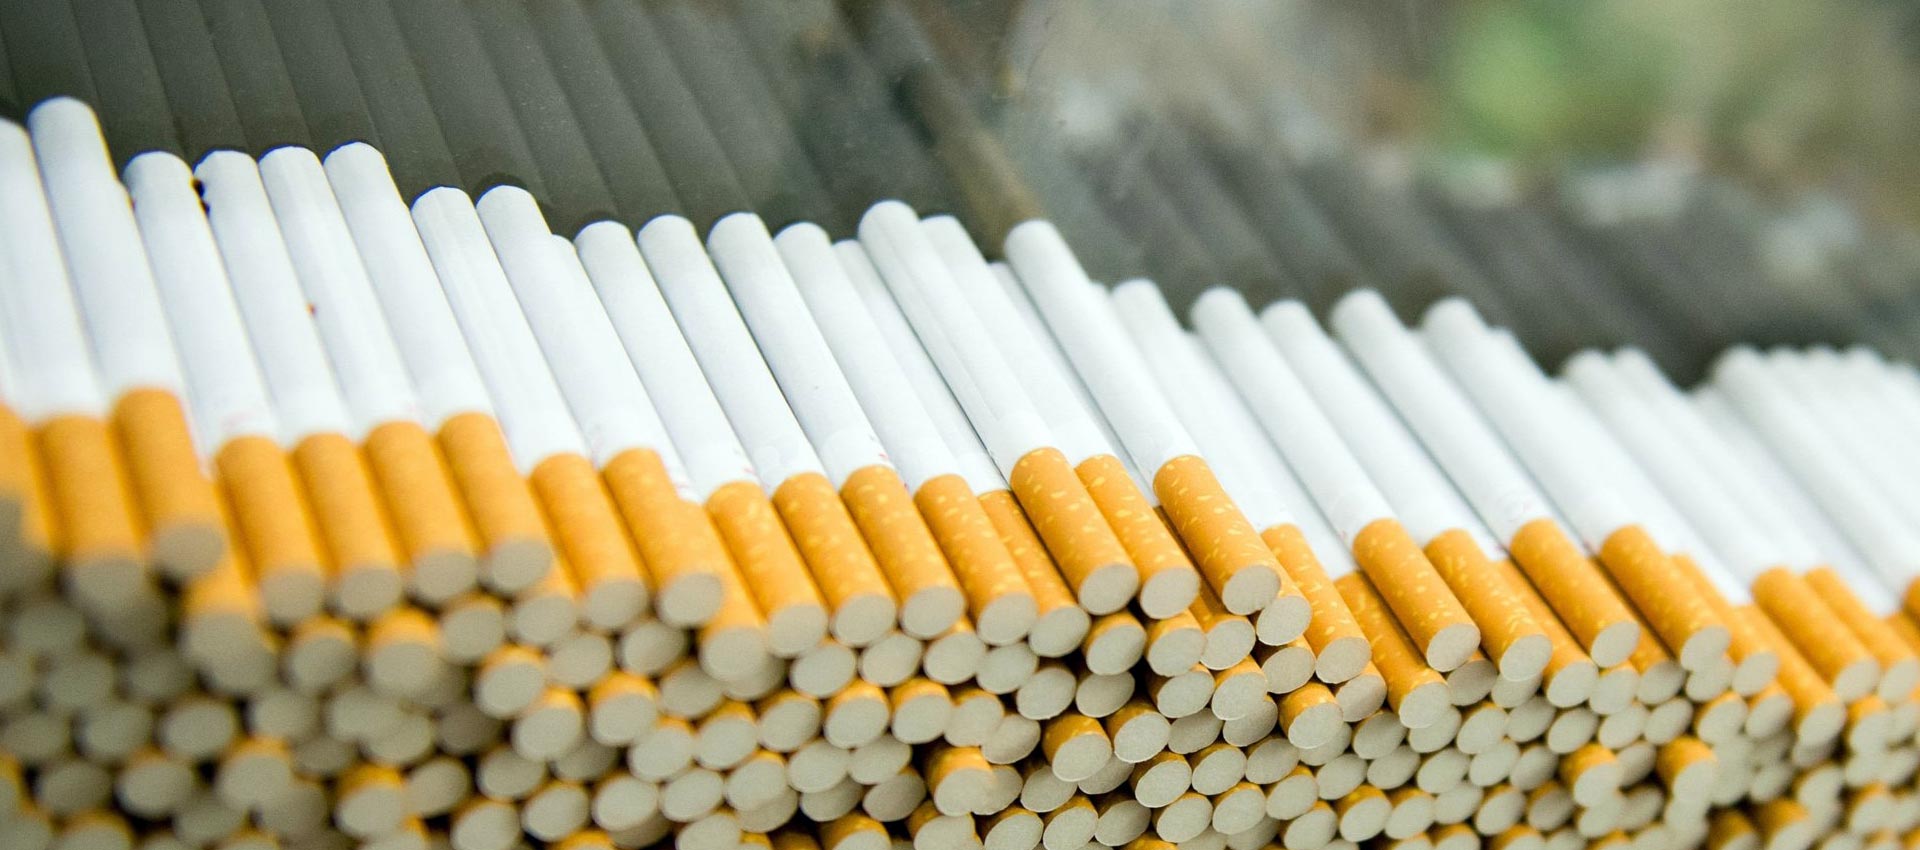 Premium Cigarettes From Gulf Tobacco